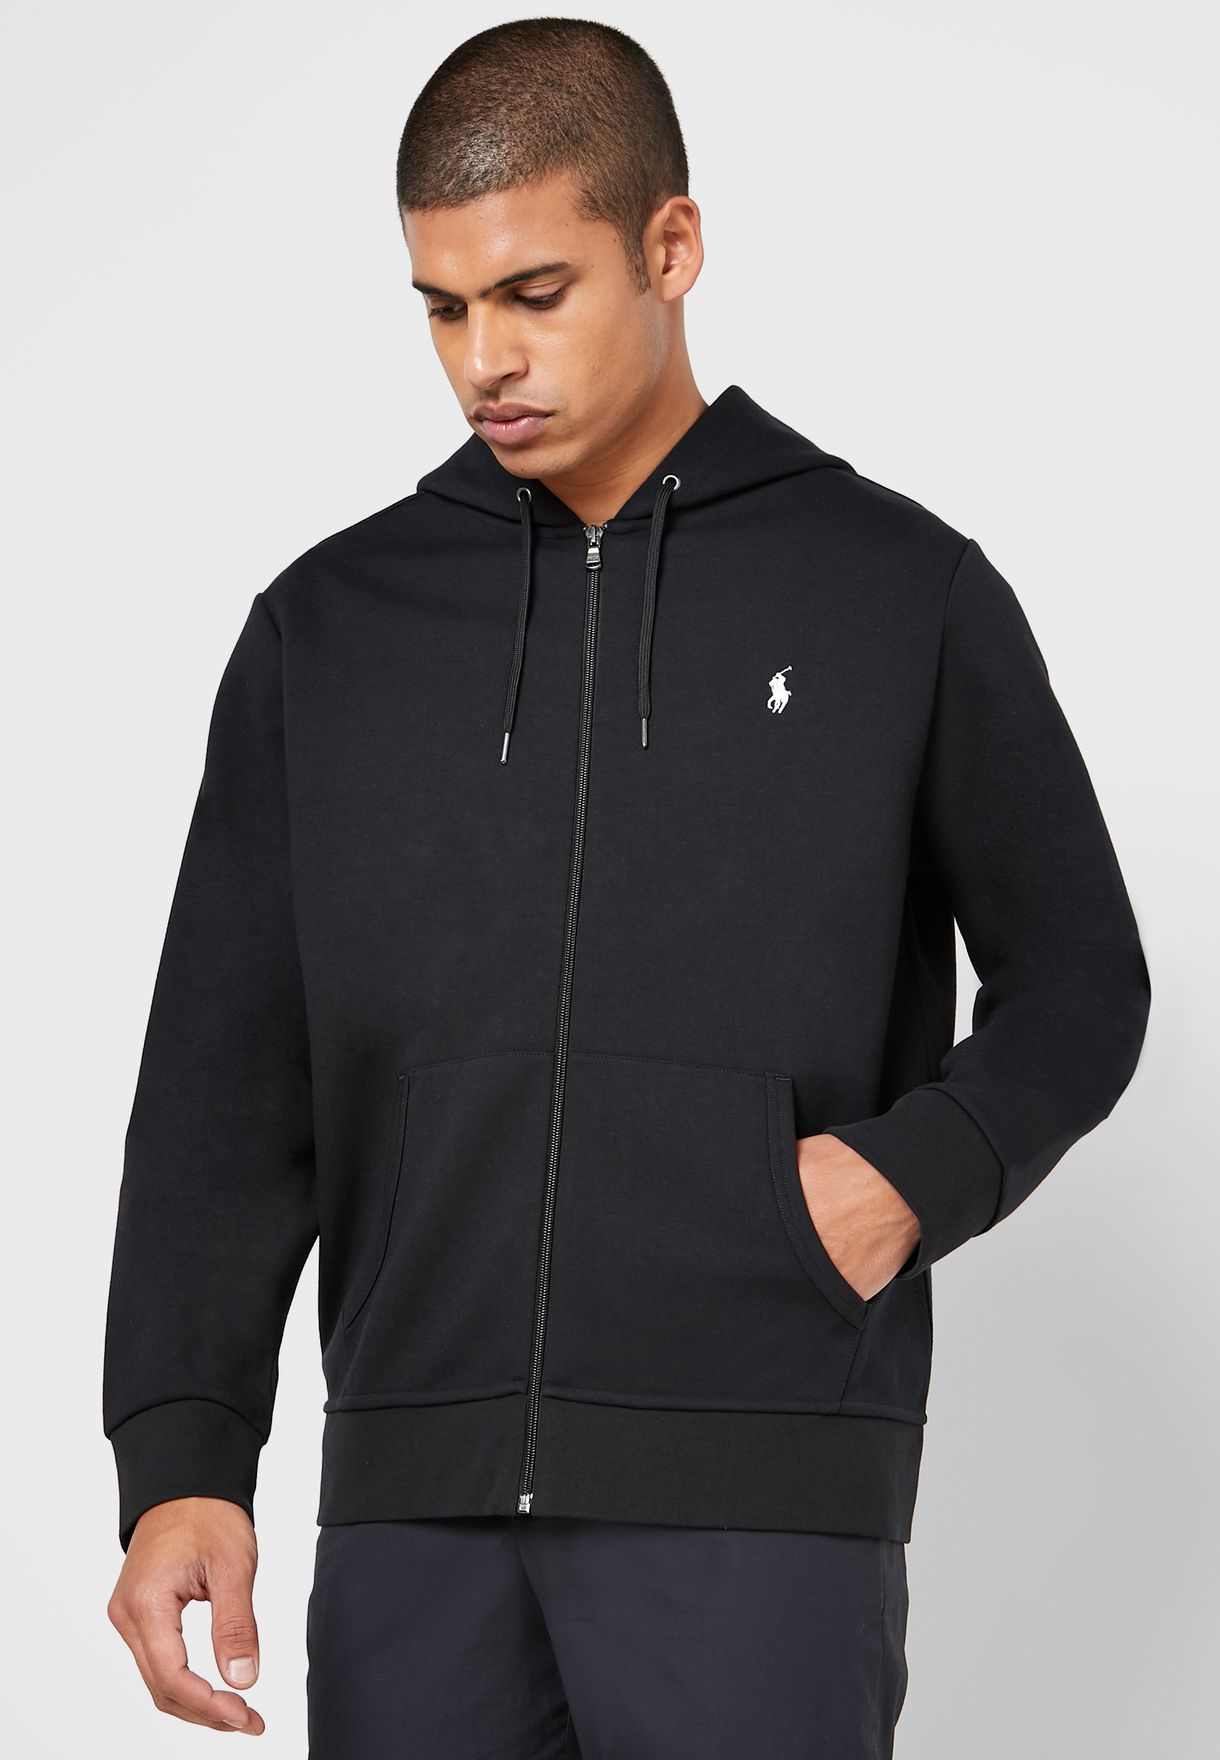 black zip up hoodie polo